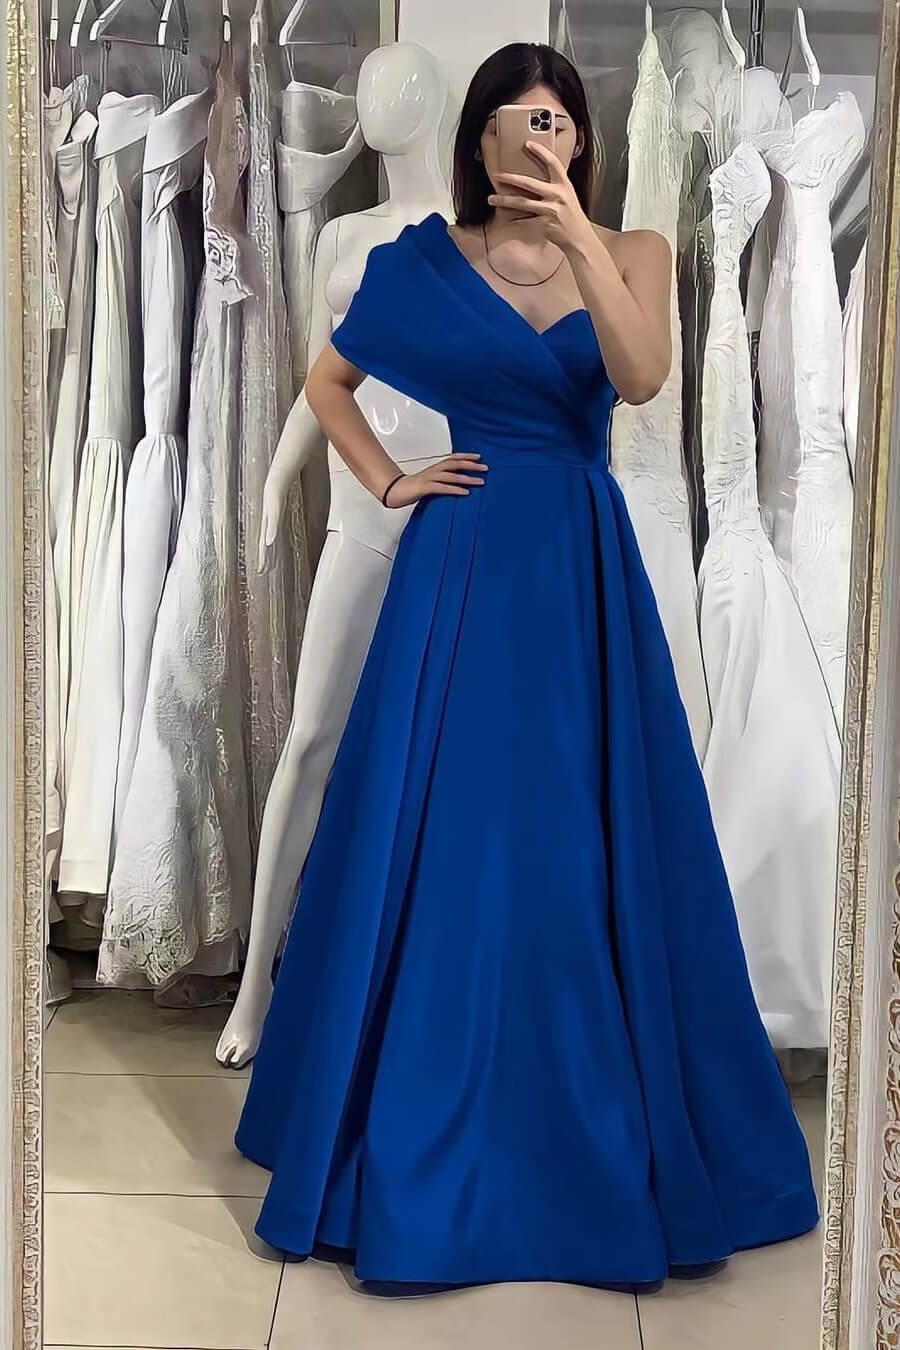 Online Elegant Royal Blue One Shoulder Sweetheart Evening Dress With Off-The-Shoulder